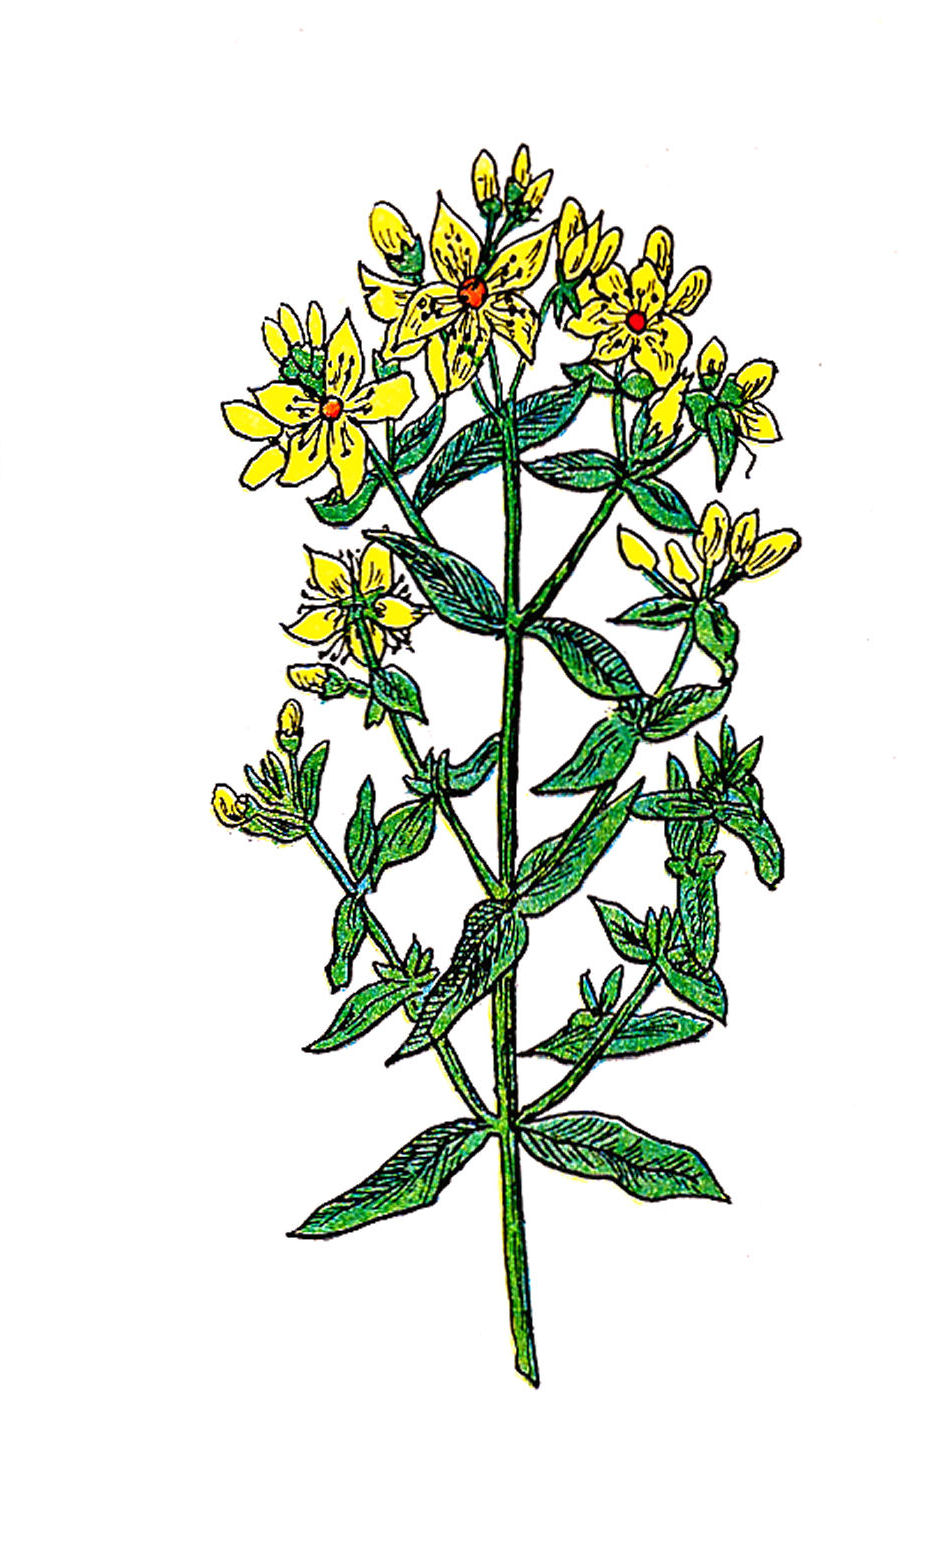 Antique Images: Vintage Flower Graphic: Vintage St. John's Wort ...